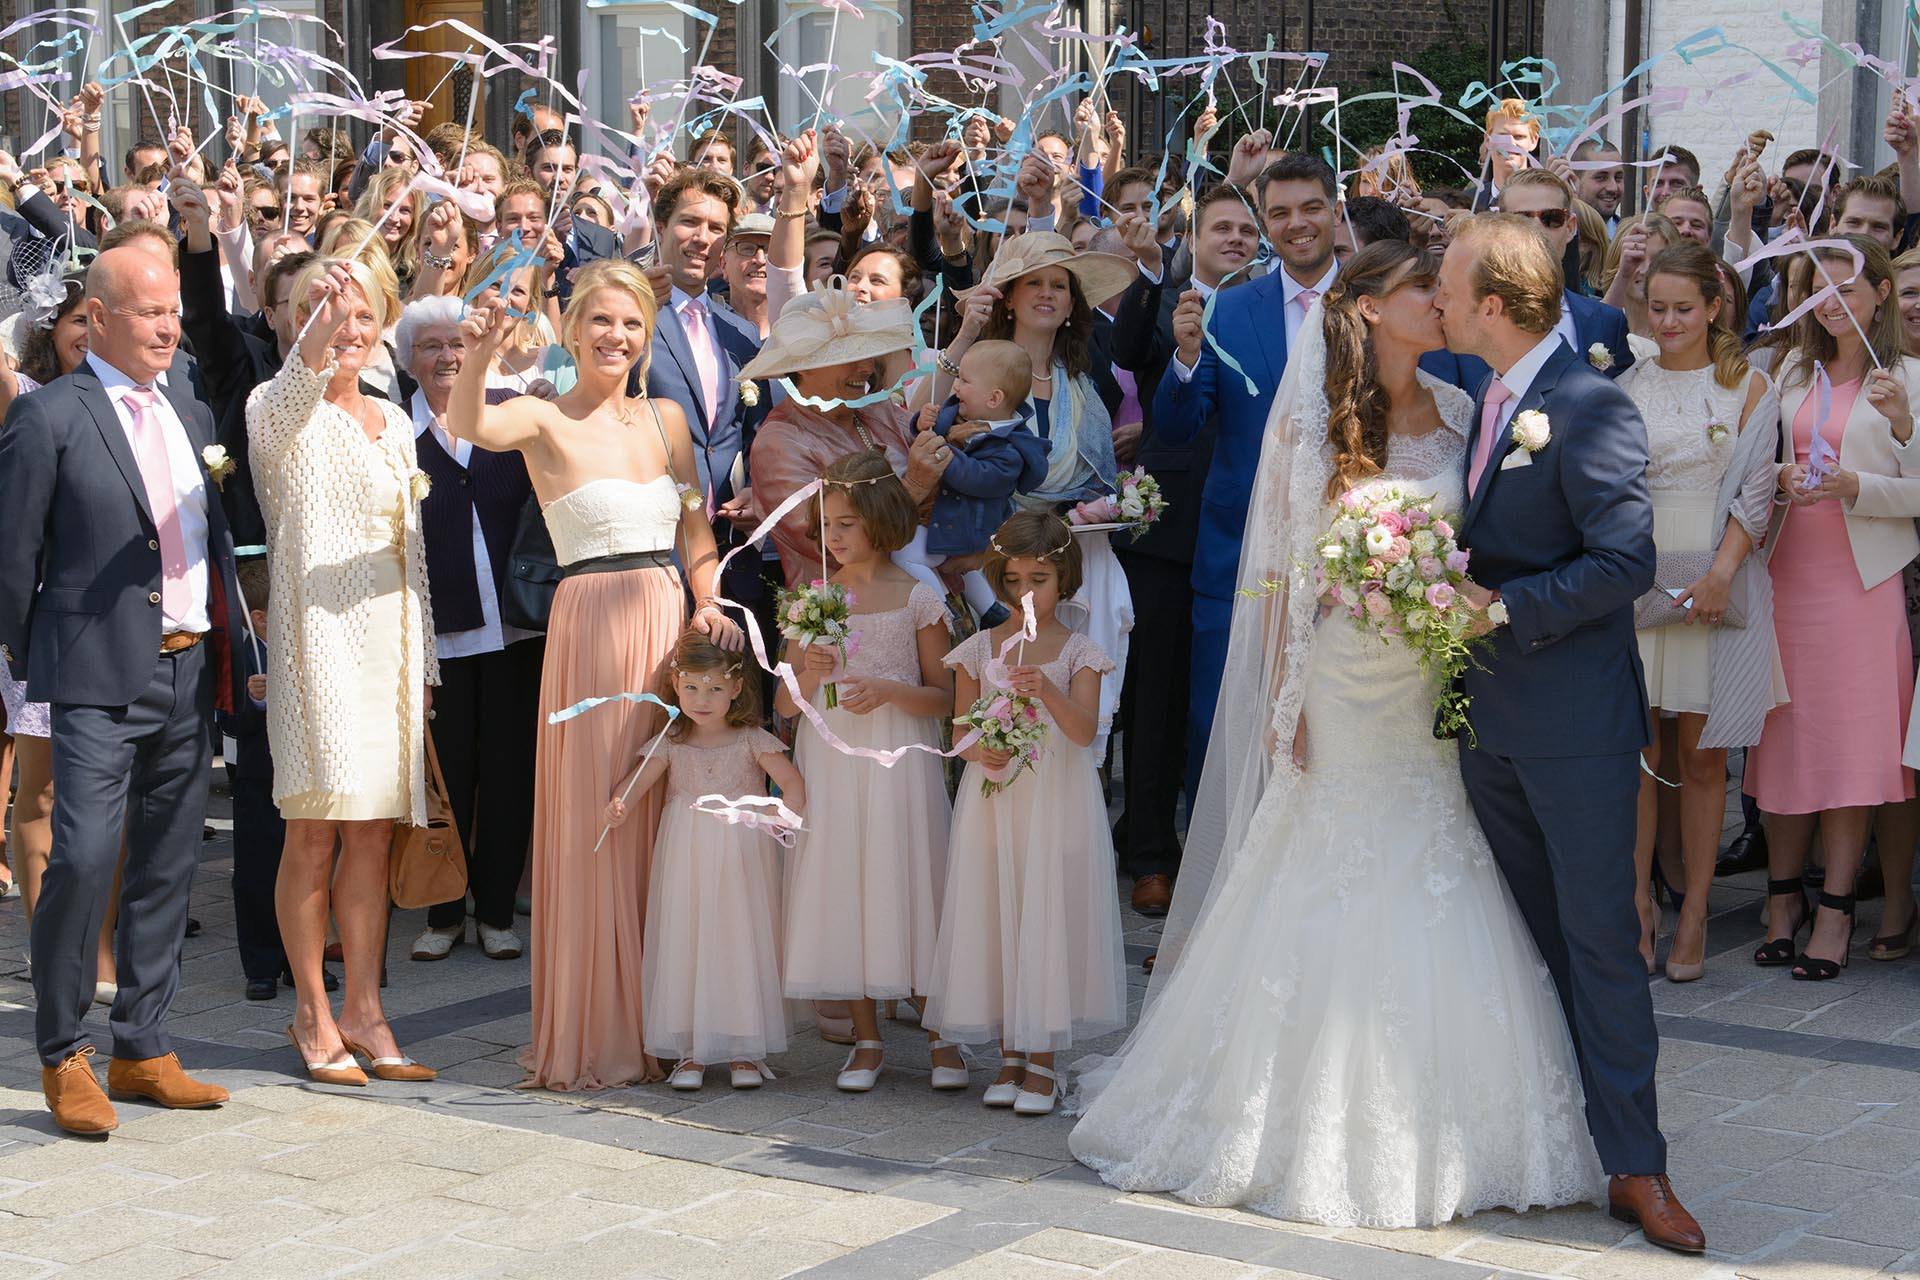 Prijzen bruidsfotograaf Maastricht Limburg - Bruiloft fotograaf kosten - trouwreportage prijzen